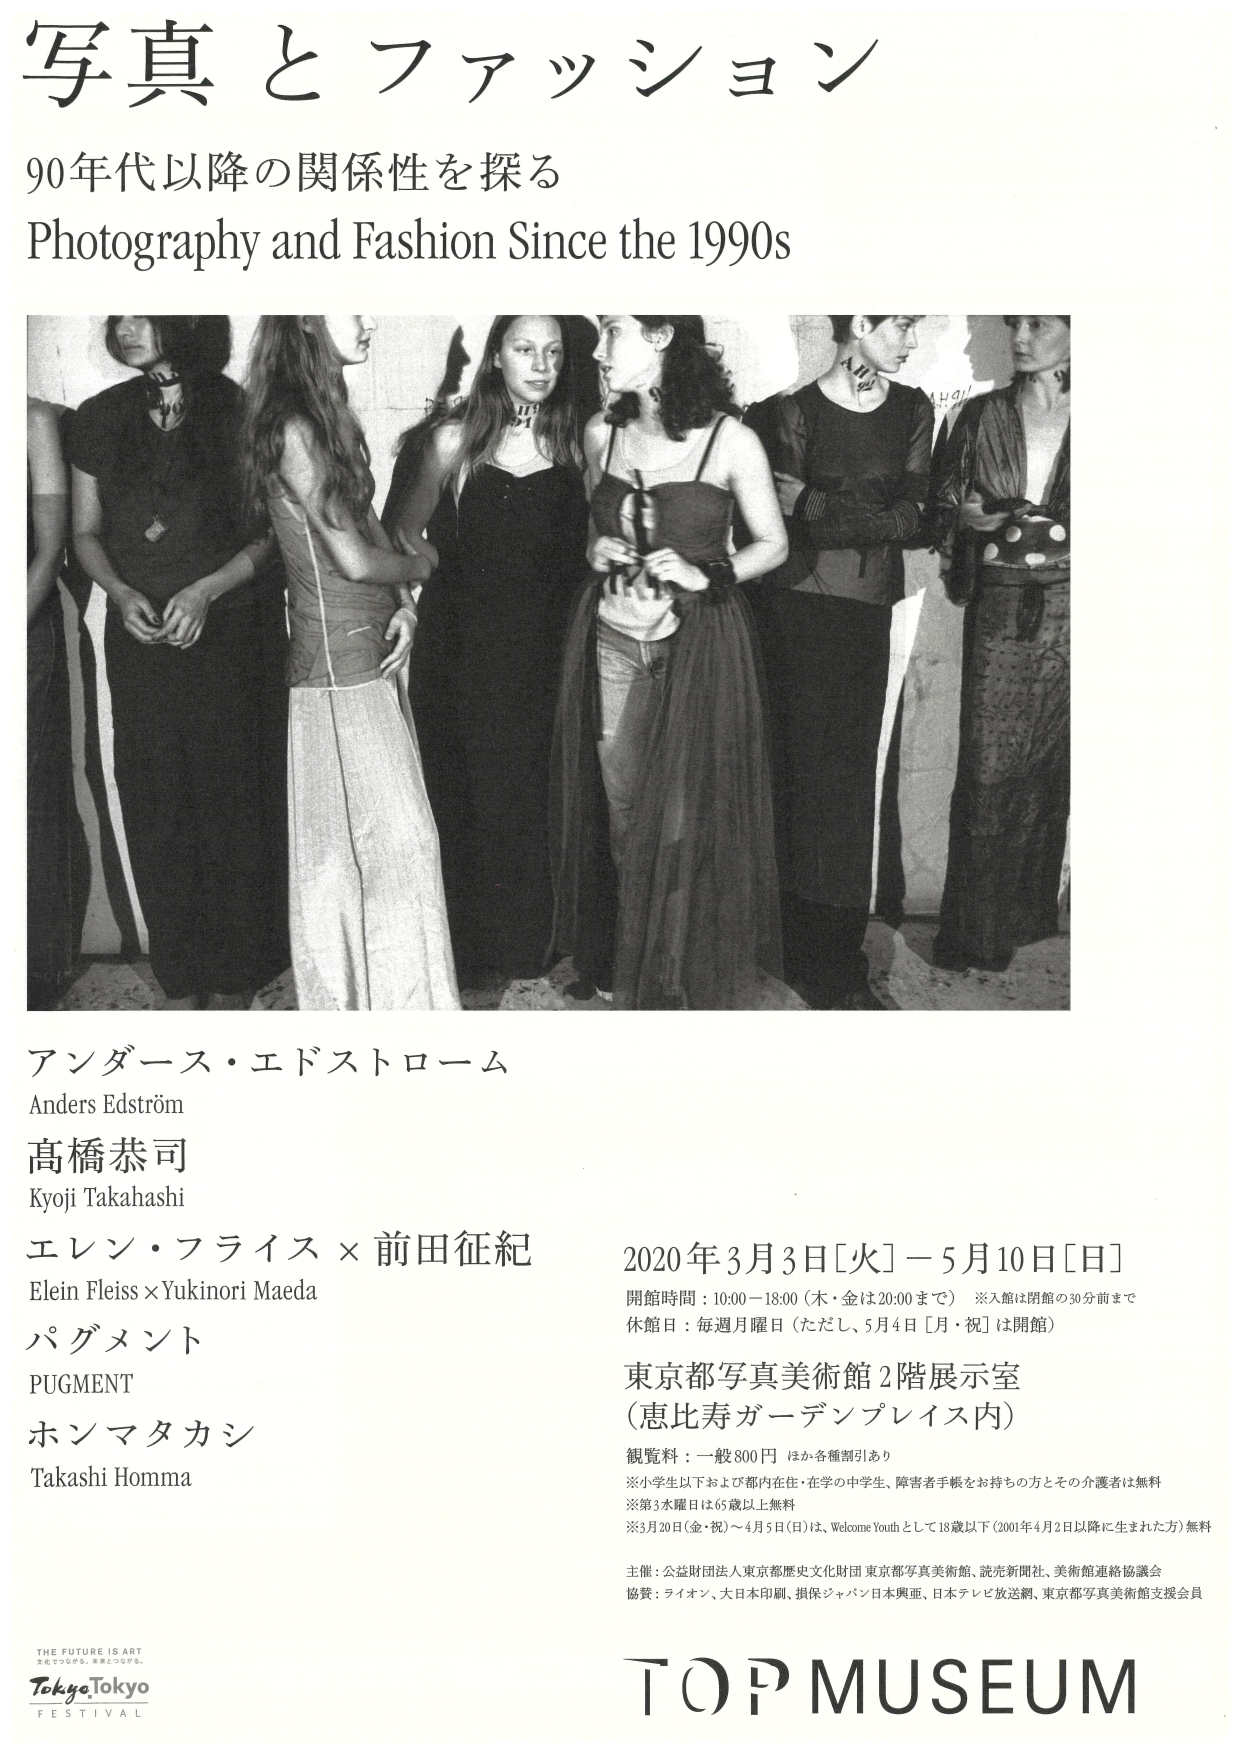 写真とファッション 90年代以降の関係性を探る イベント情報 公益財団法人東京都歴史文化財団